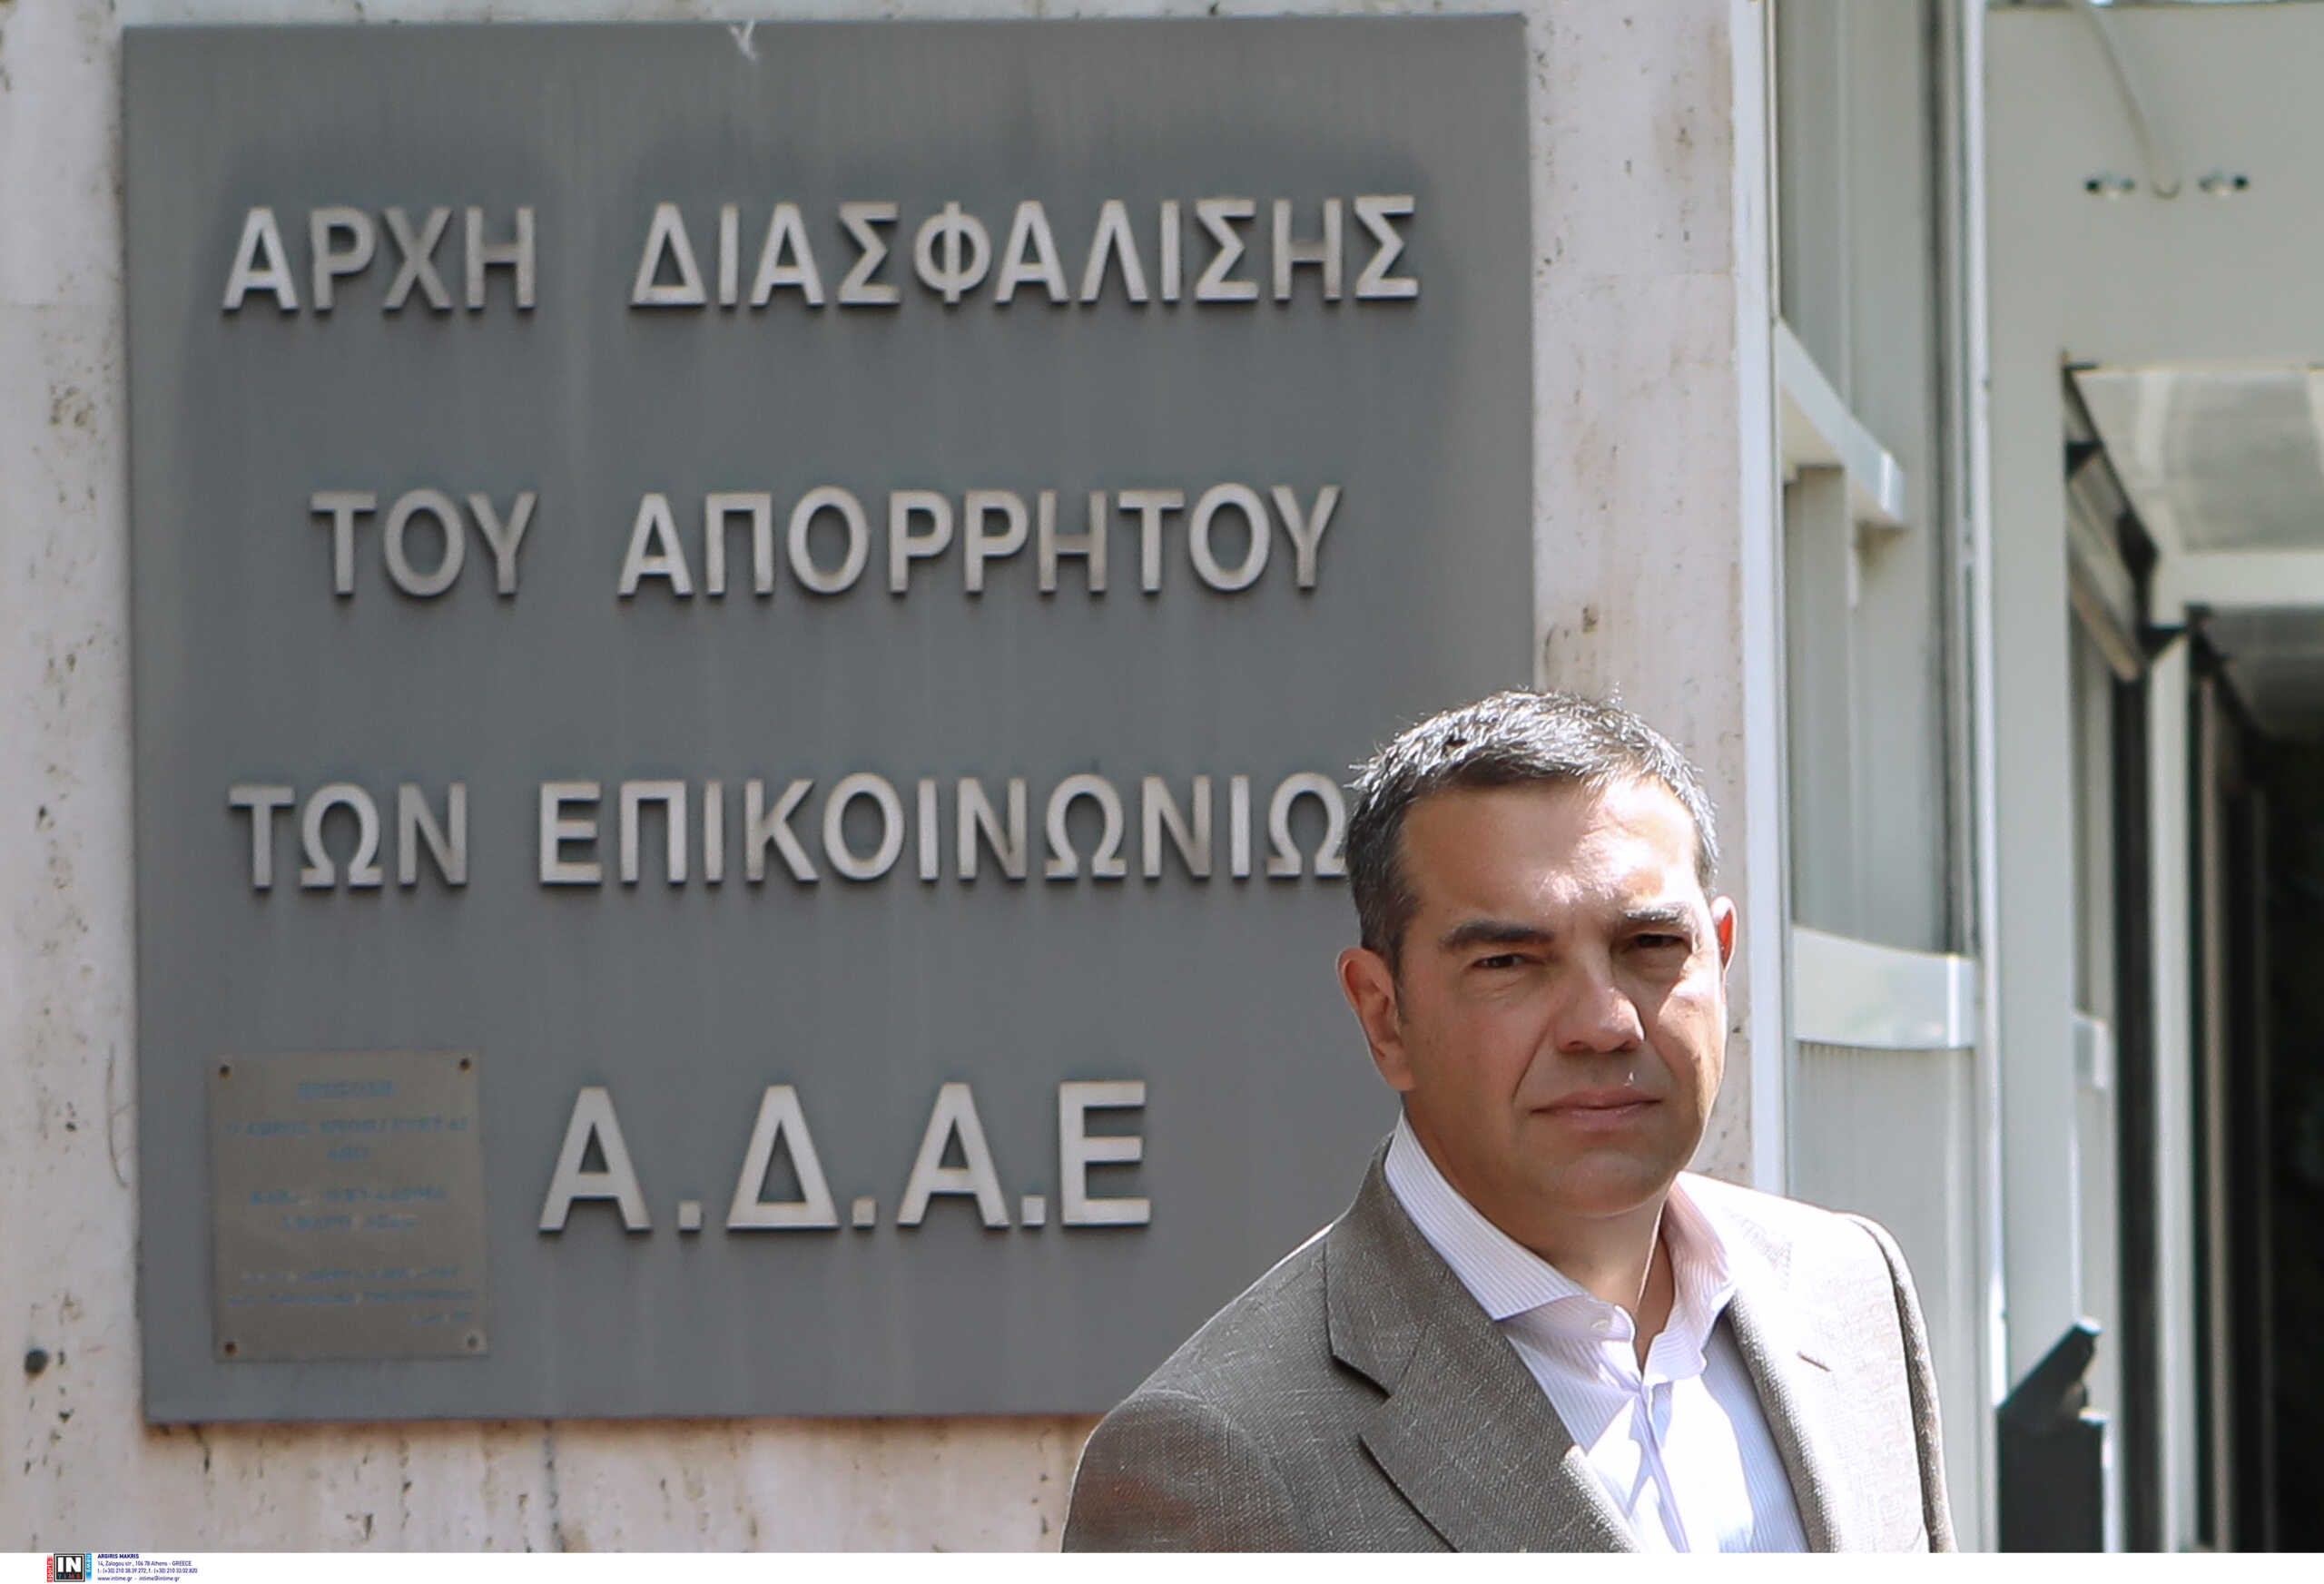 Τσίπρας στην ΑΔΑΕ: «Άμεσα έρευνα για το αν και πόσοι ακόμα βουλευτές και ευρωβουλευτές παρακολουθούνται»